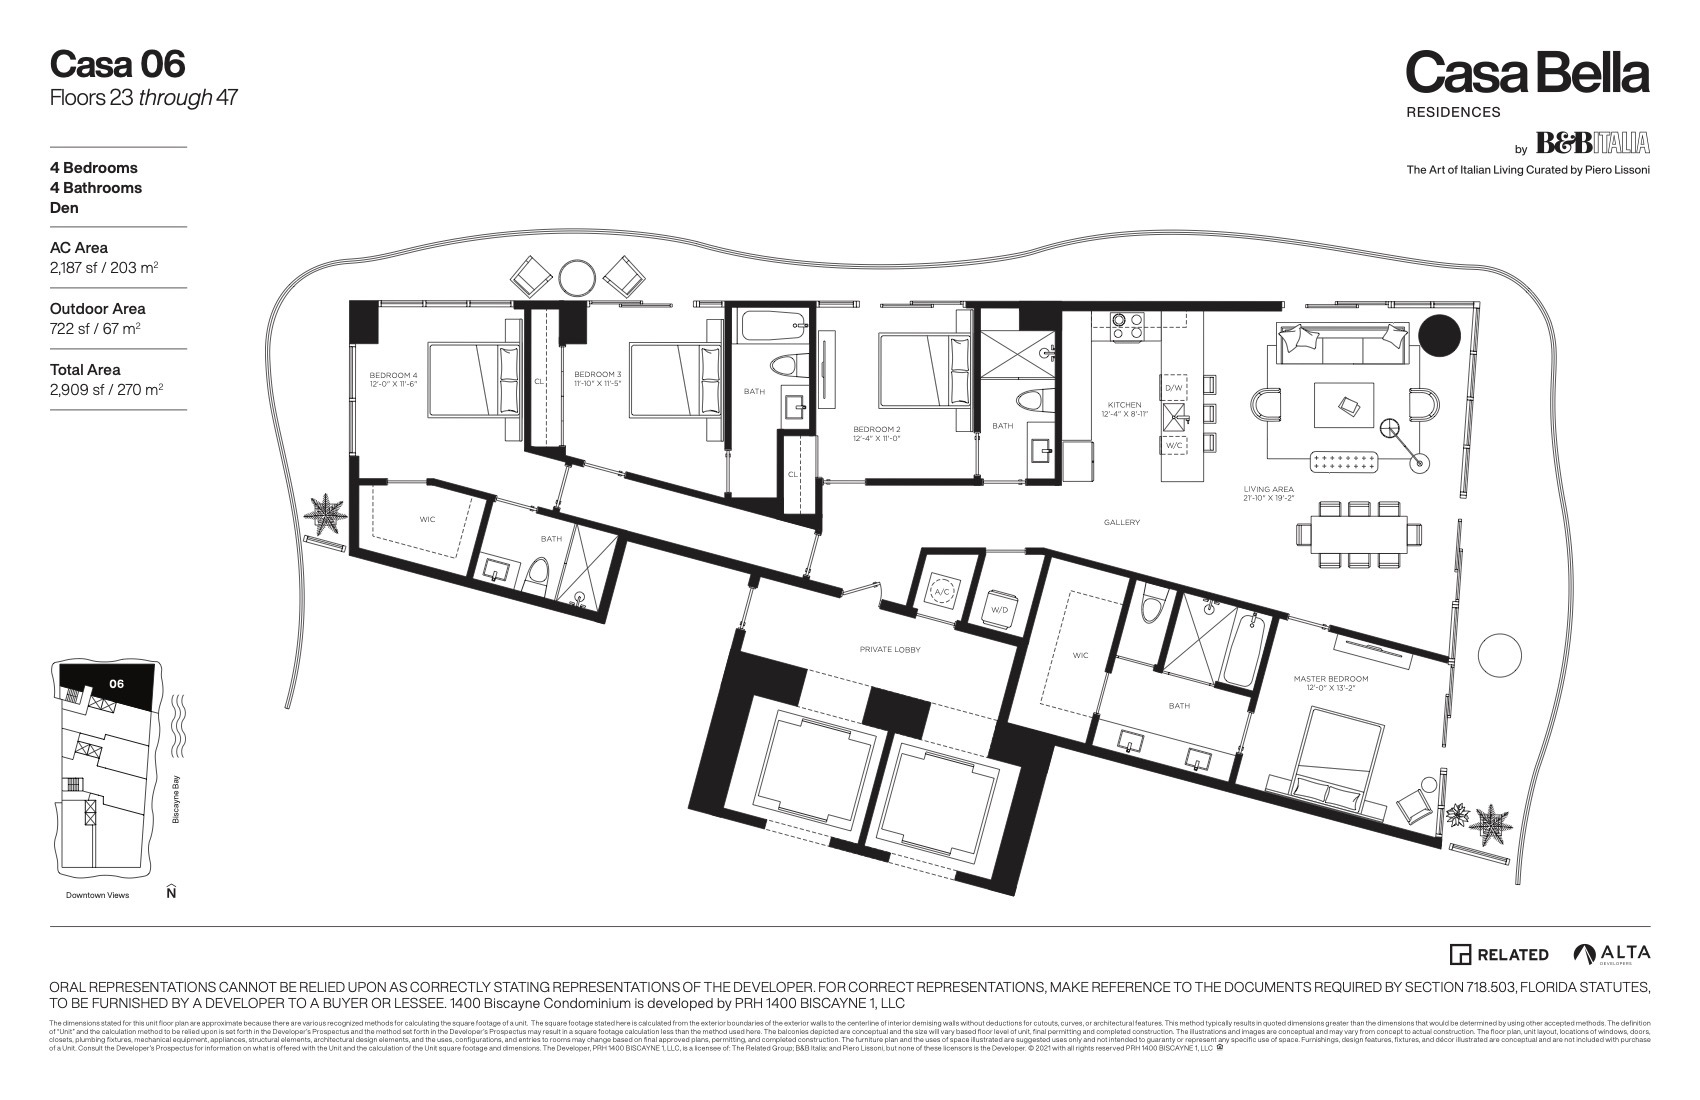 Floor Plan for Casa Bella Downtown Miami Floorplans, Casa 06